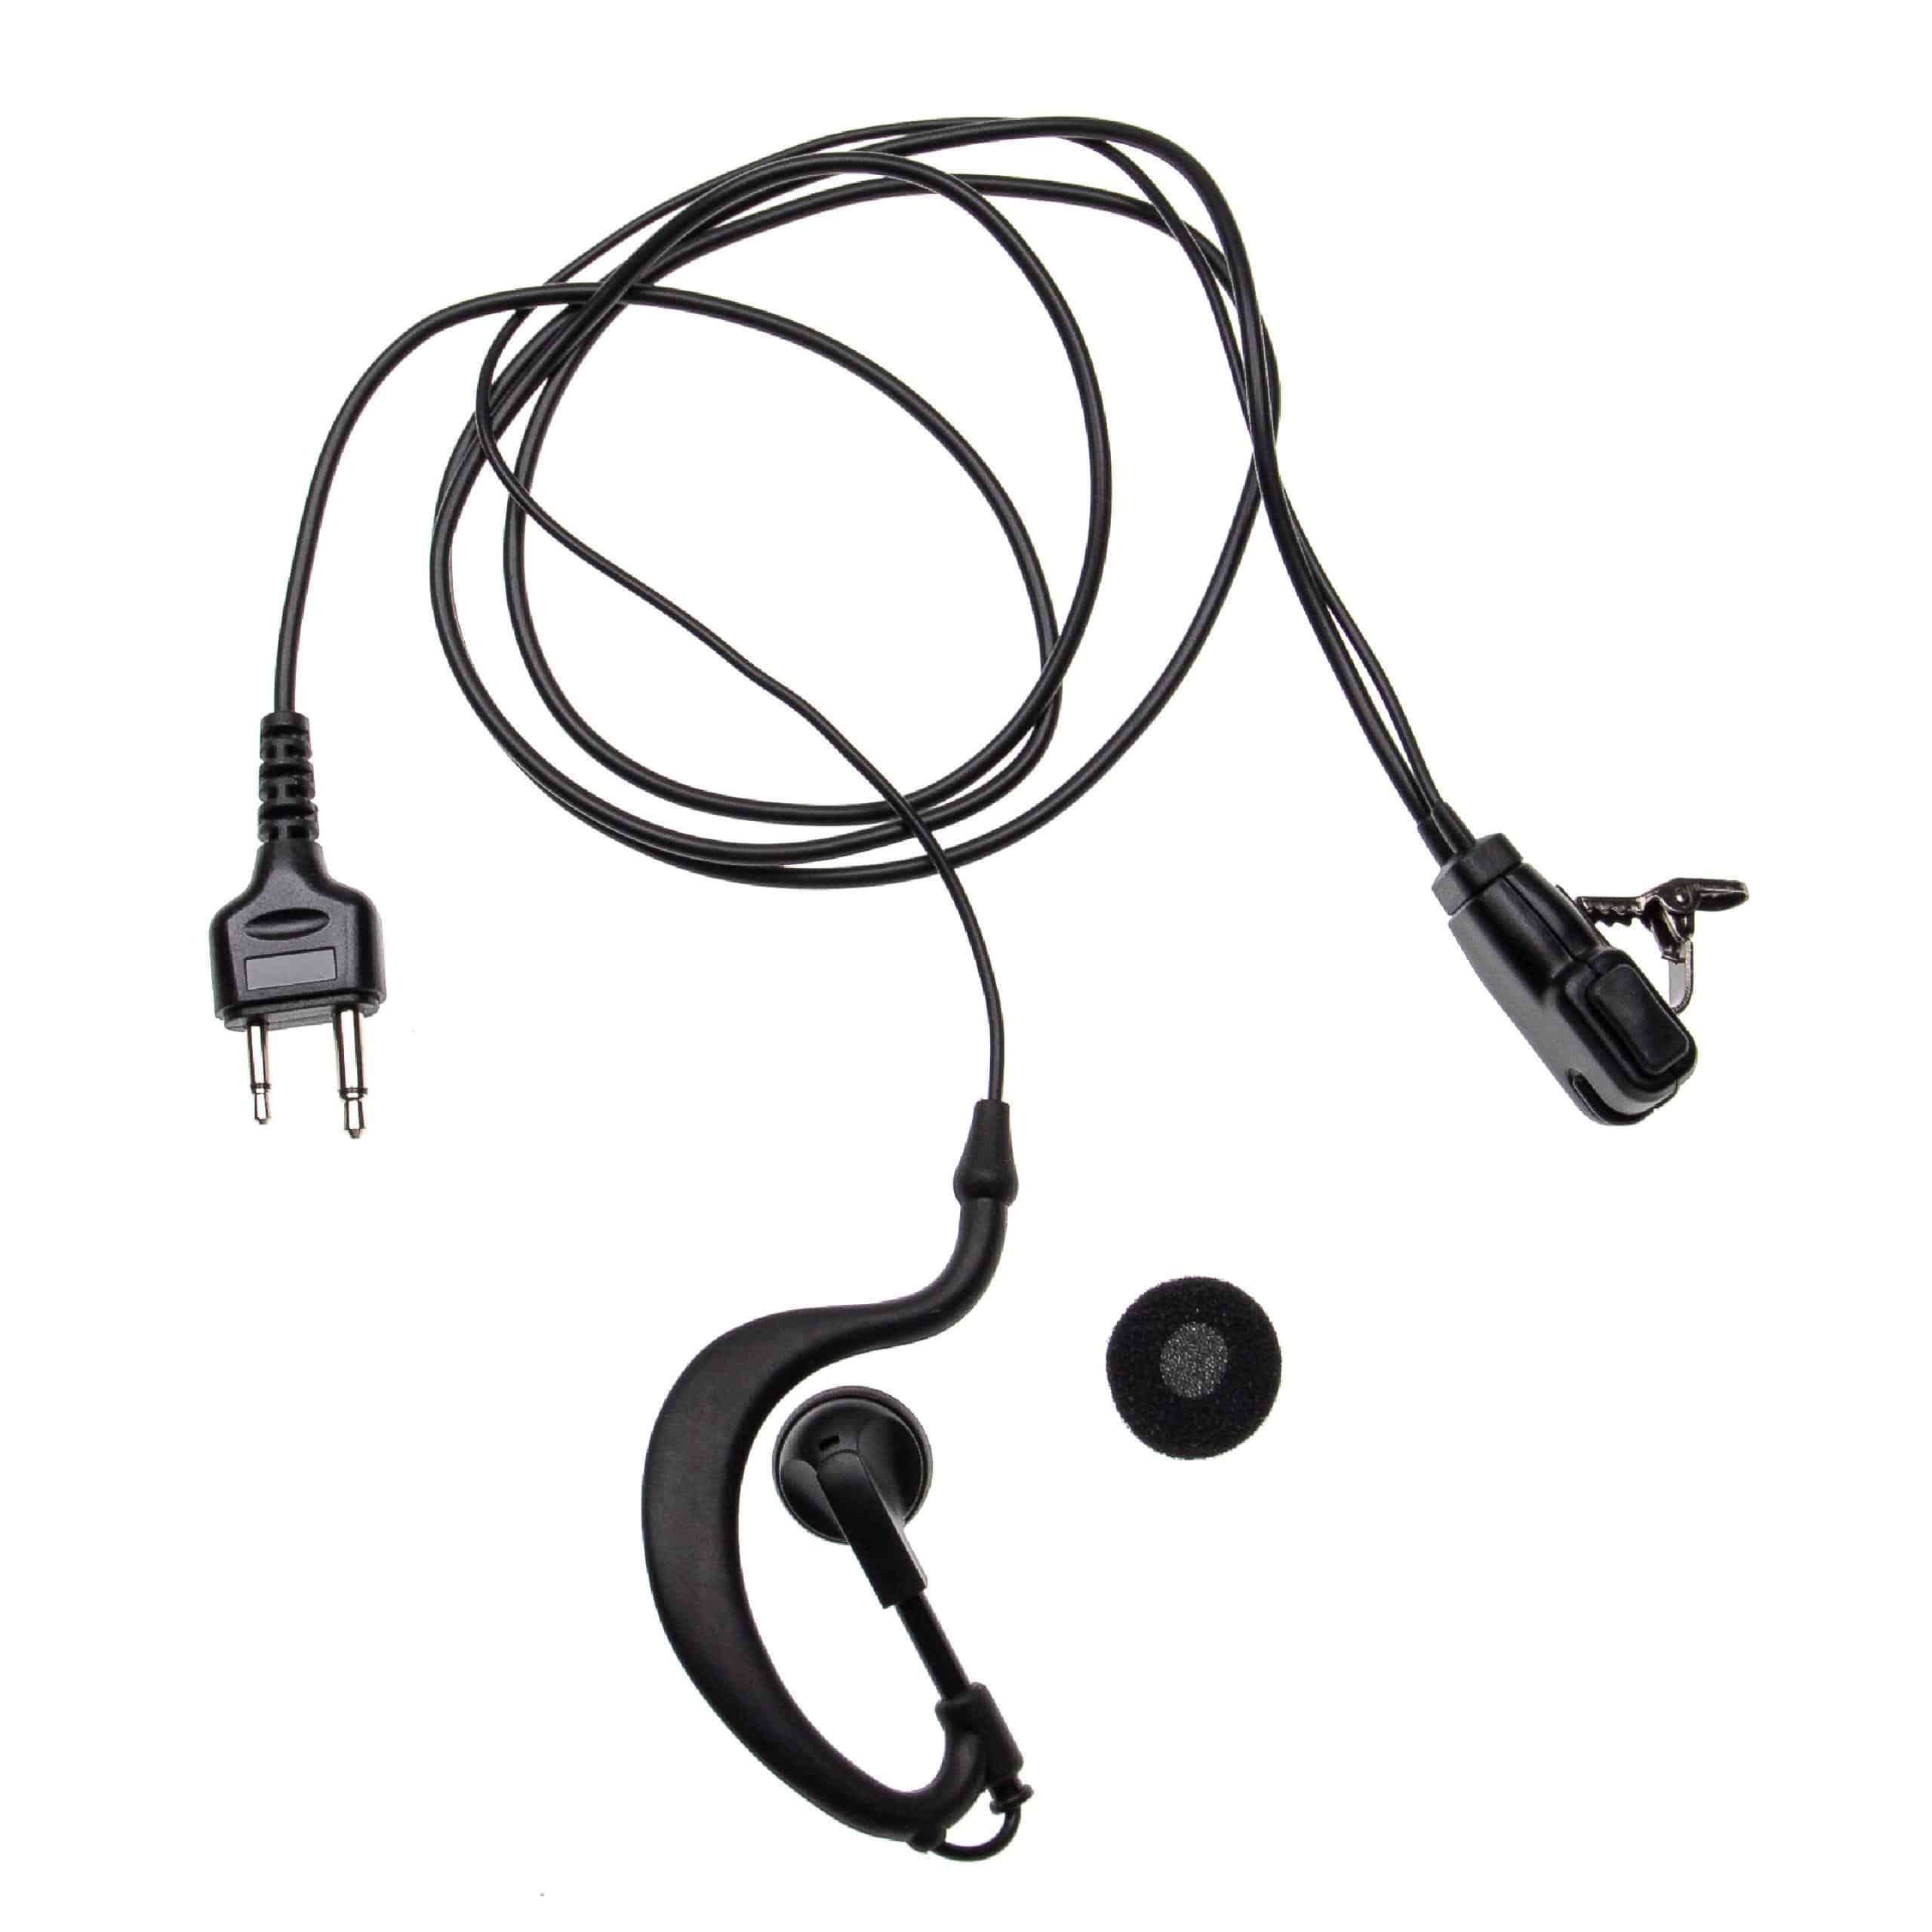 Security headset per diverse radio Intek ecc. - nero + pulsante chiamata + supporto clip